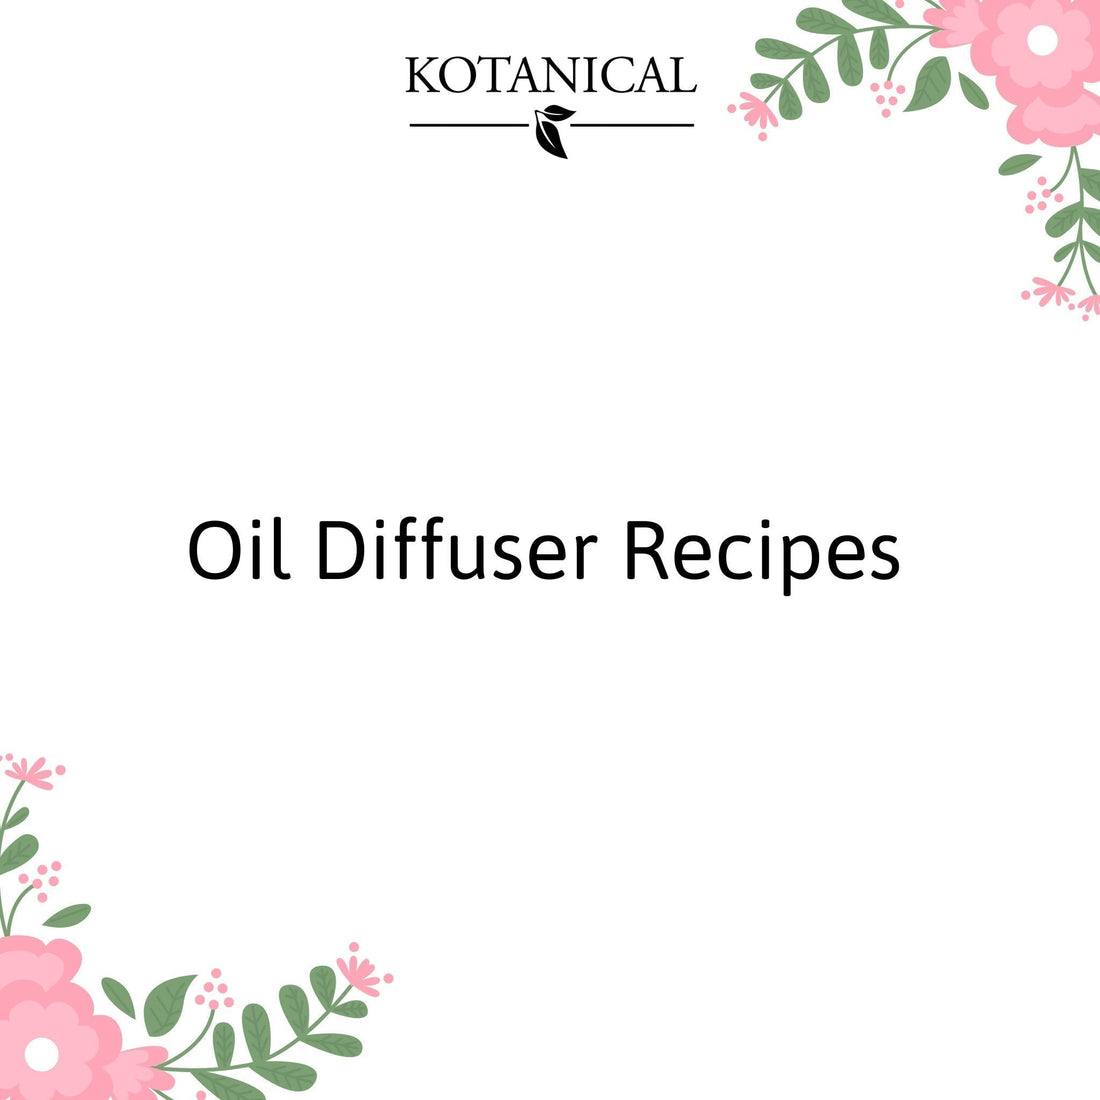 Oil Diffuser Recipes